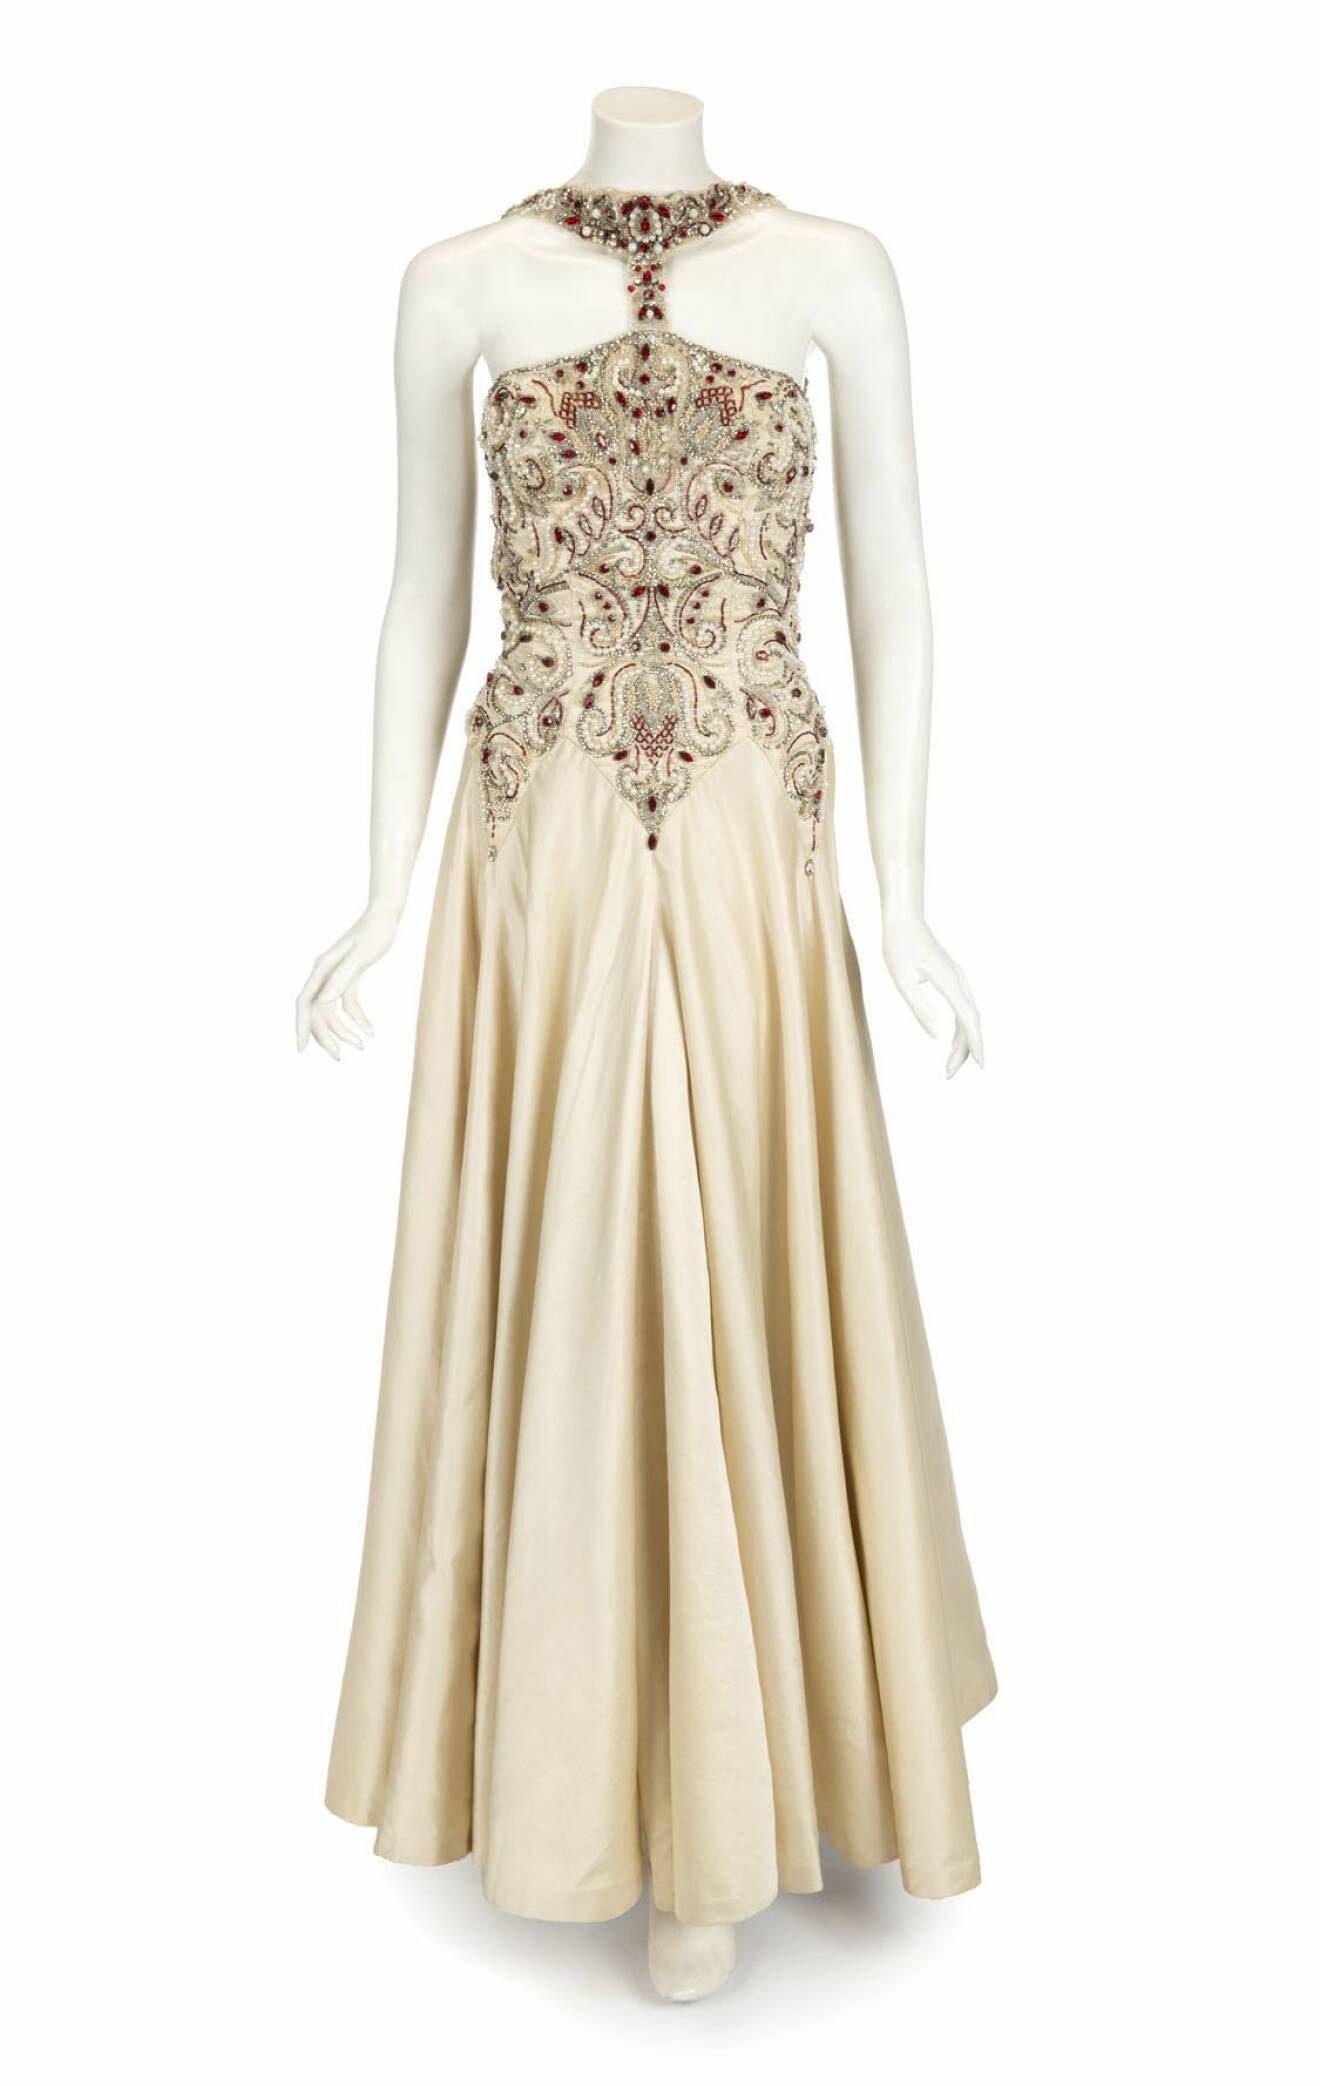 Klänningen från filmen ”Evita” fick köparen betala hela 111 450 kronor. Foto: All Over Press